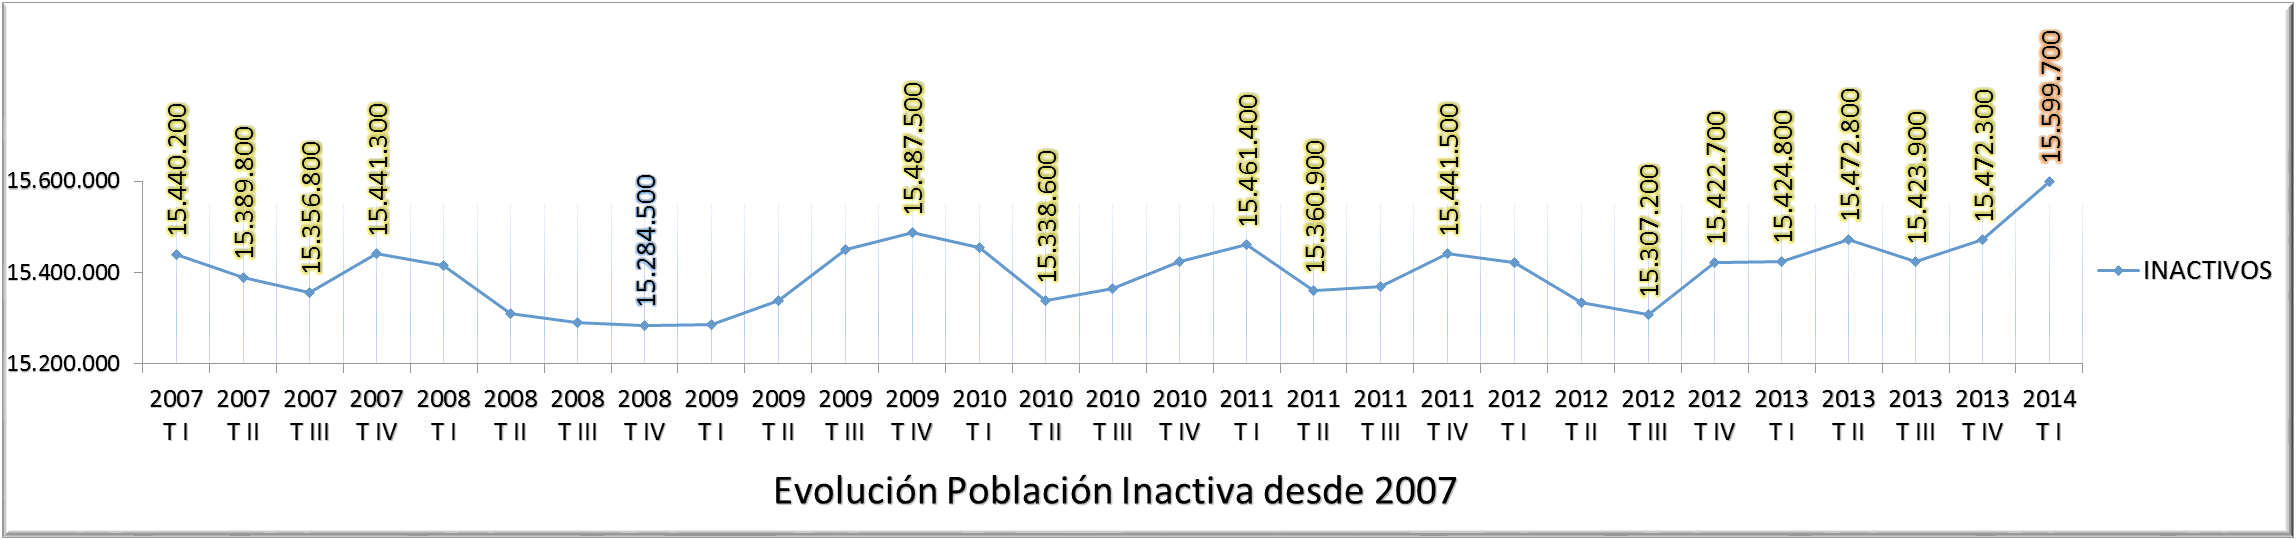 Evolución Inactivos EPA 2007-2014